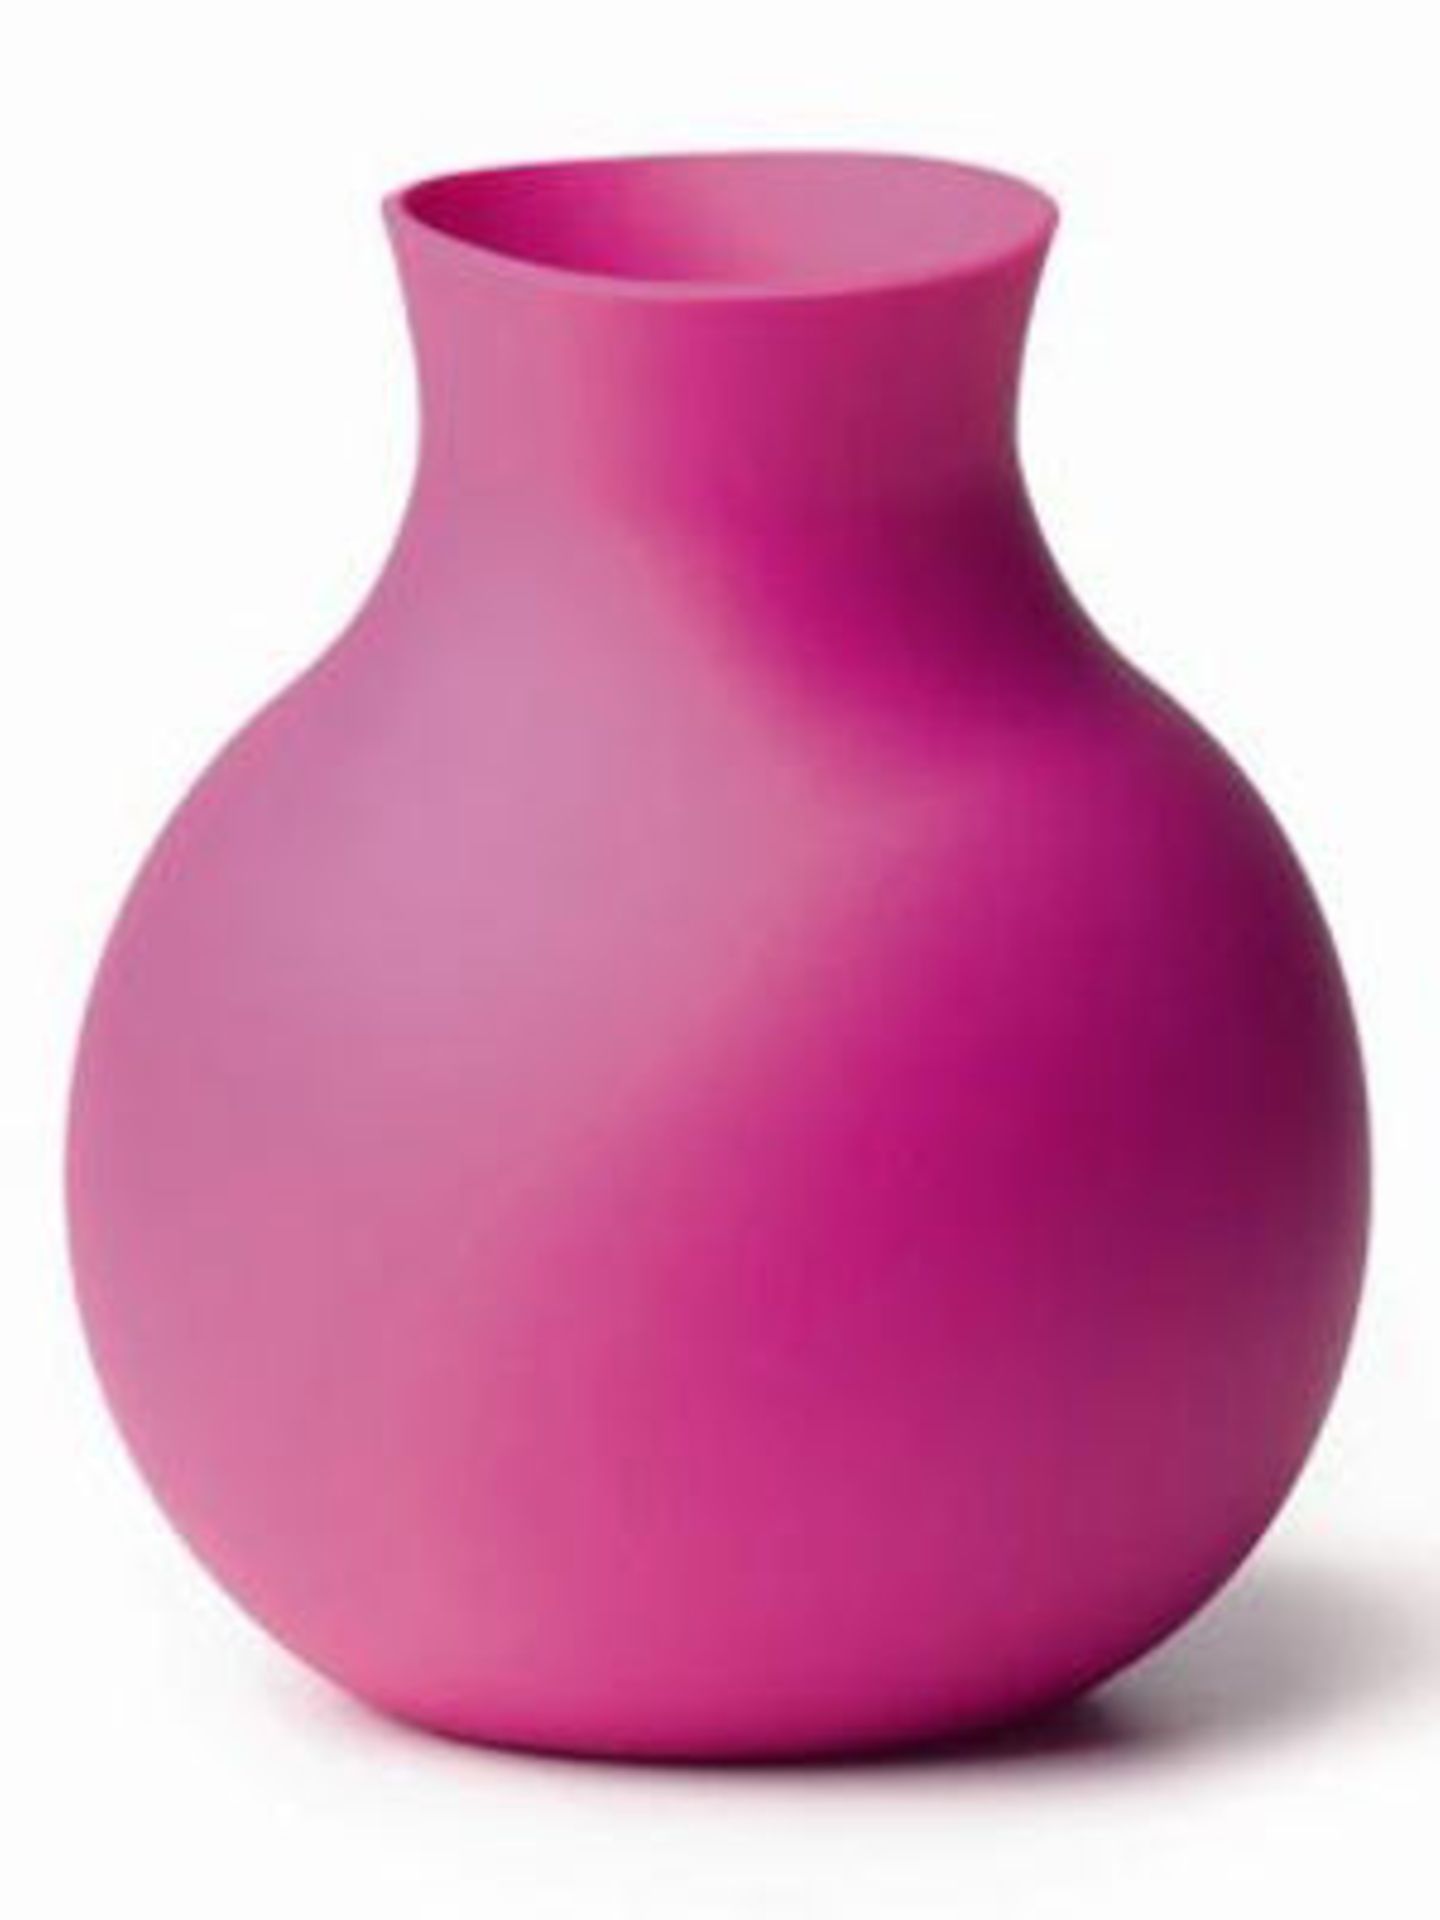 Gib Gummi! Das nennen wir flexibel: Dank des Gummimaterials kann diese Vase ganz leicht ihren Look verändern. Mit hoch geklapptem Hals kommen langstielige Blumen bestens zur Geltung, während die nach innen geschobene Öffnung perfekt für kurze, gebundene Blumen ist. Preis: ca. 30 Euro, über www.design3000.de